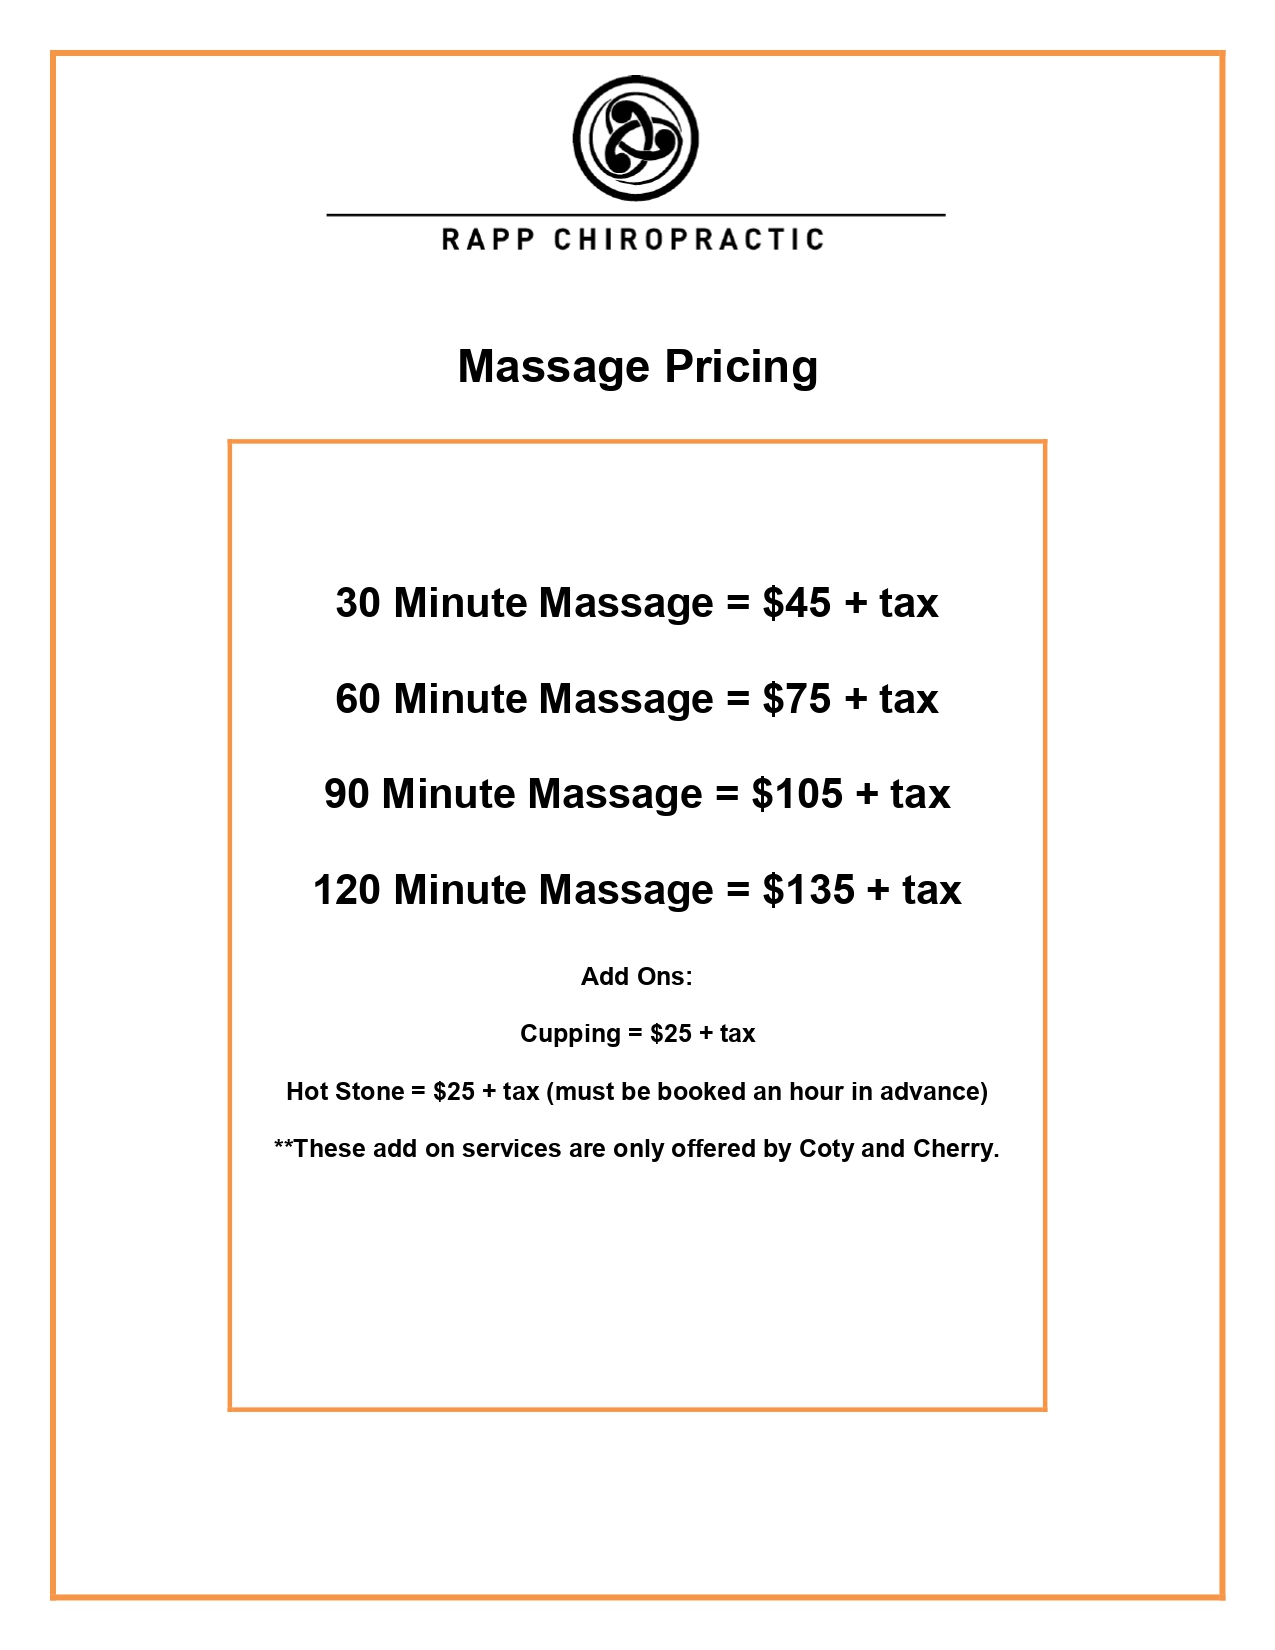 Massage pricing